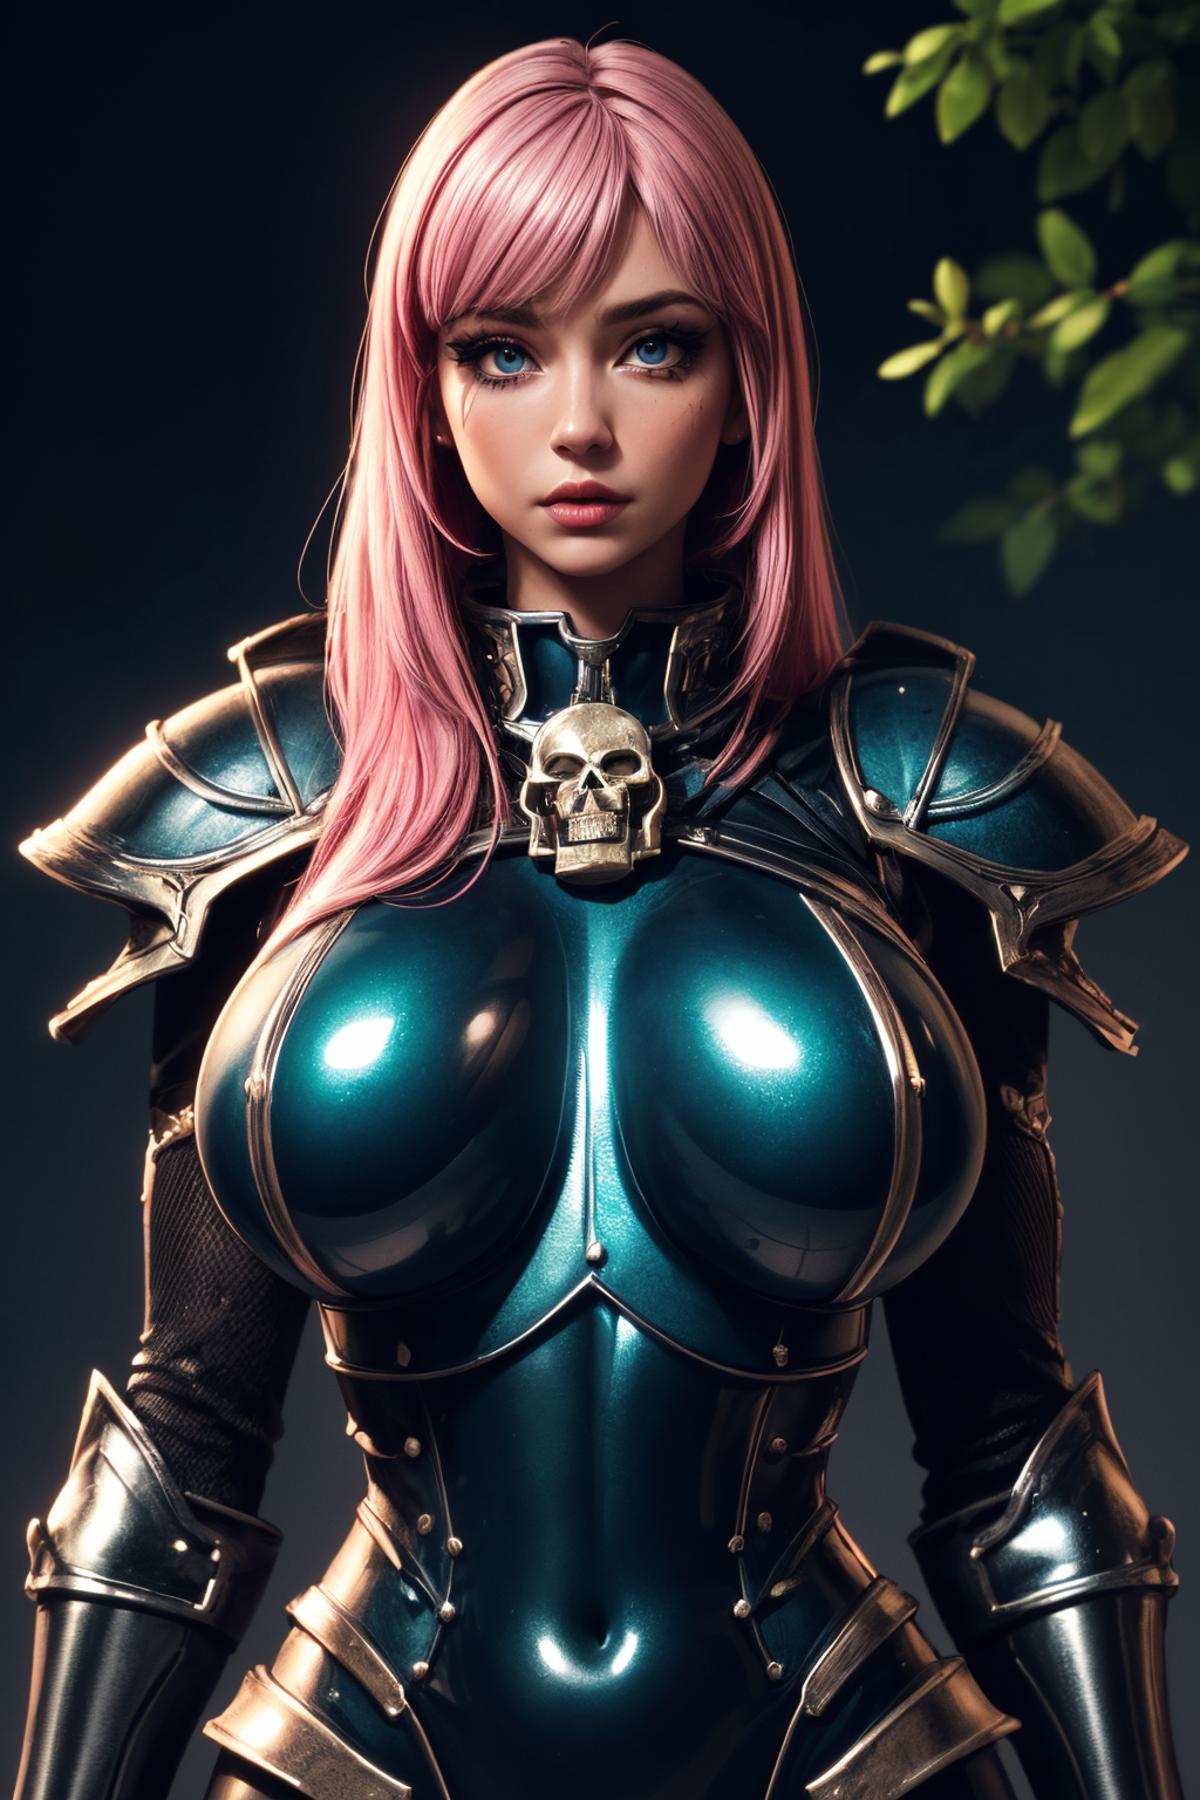 Warhammer 40K Adepta Sororitas Sister of Battle armor - by EDG image by iJWiTGS8